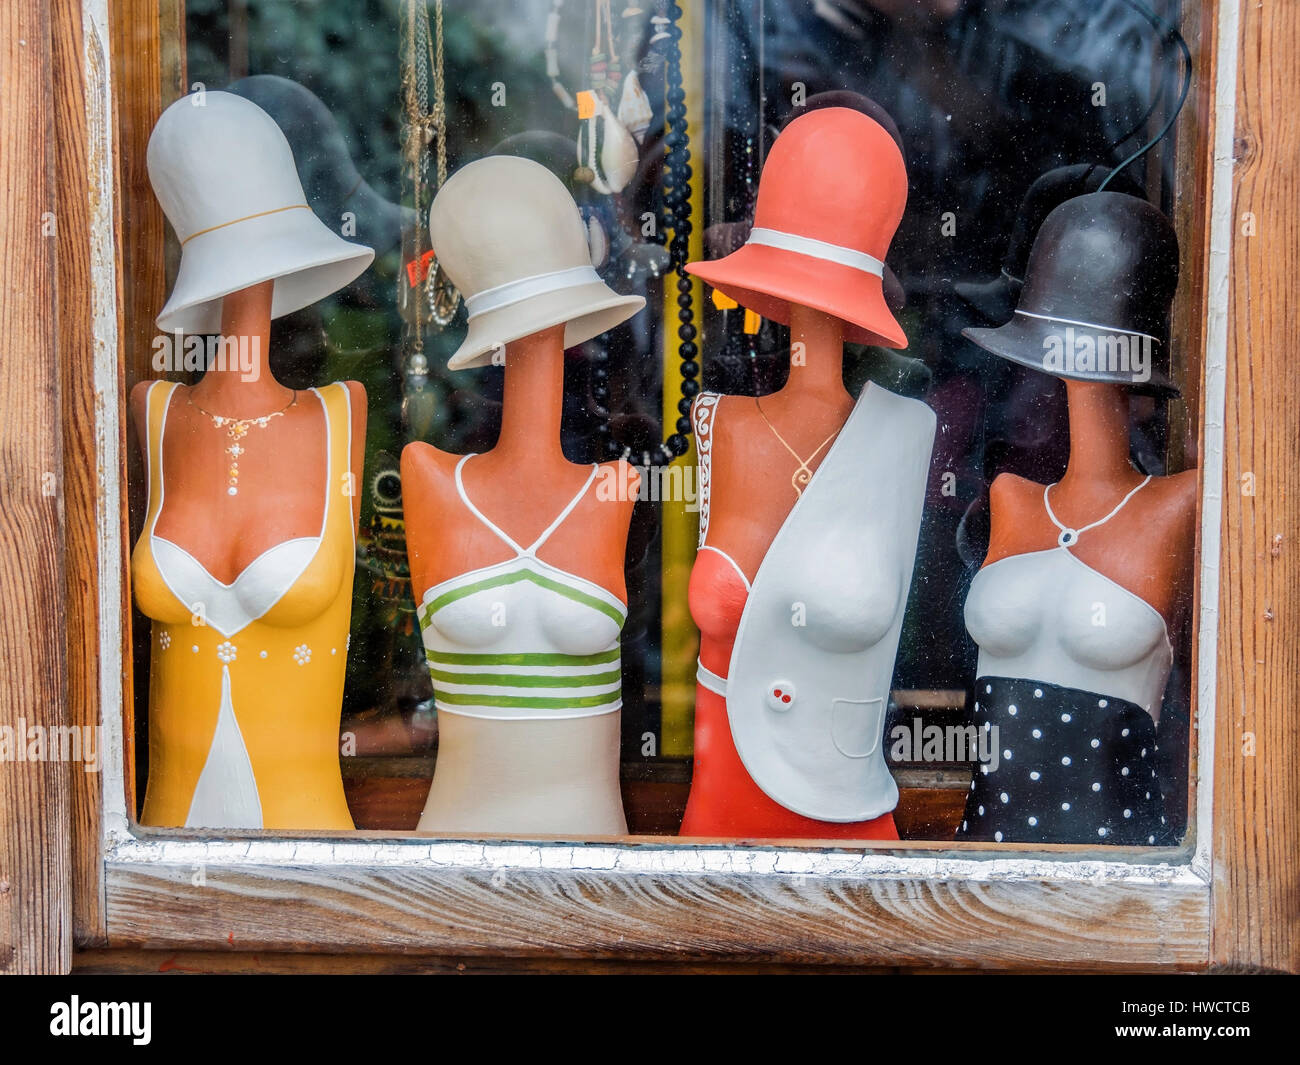 Bambole in un cappello shop, Puppen in einem Hutgeschäft Foto Stock